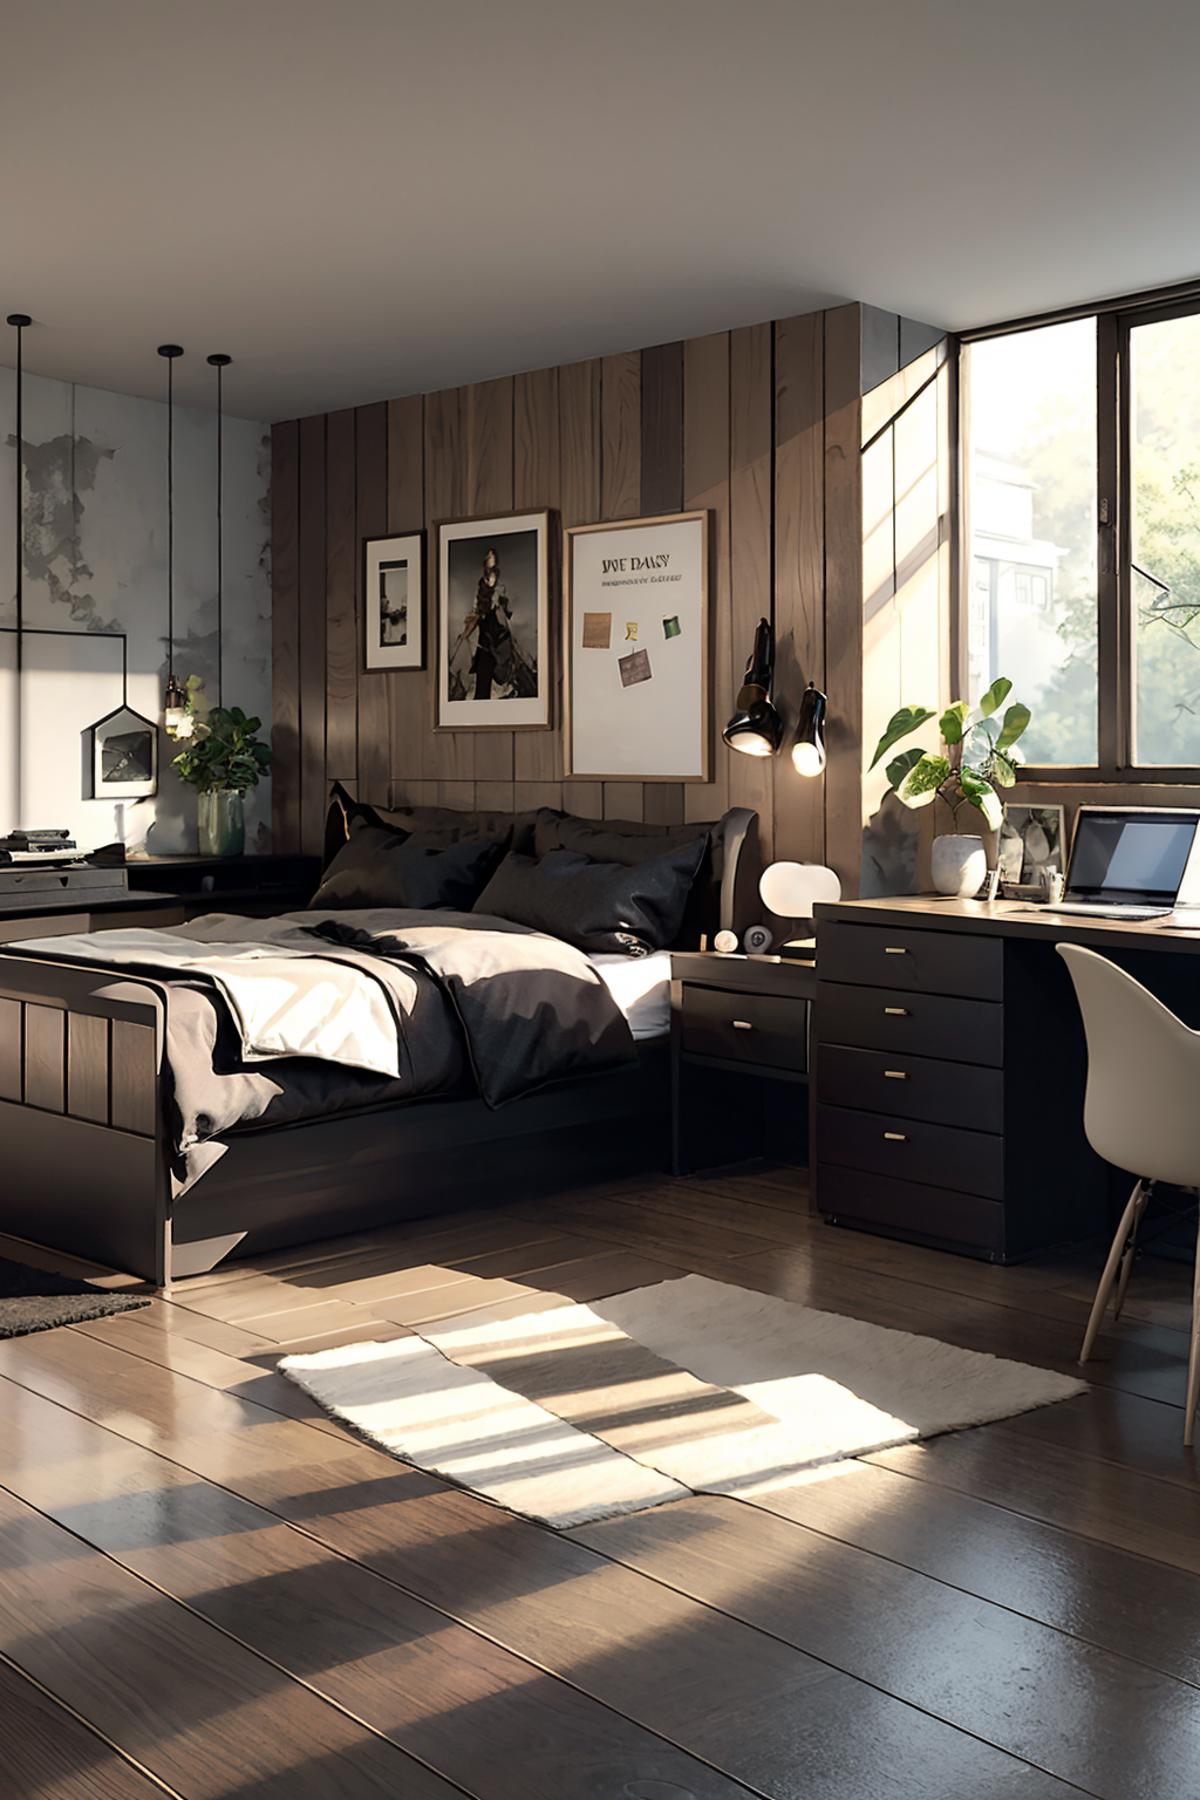 [Y5]realistic style room 写实风房间 リアルなスタイルの部屋 image by Y5targazer